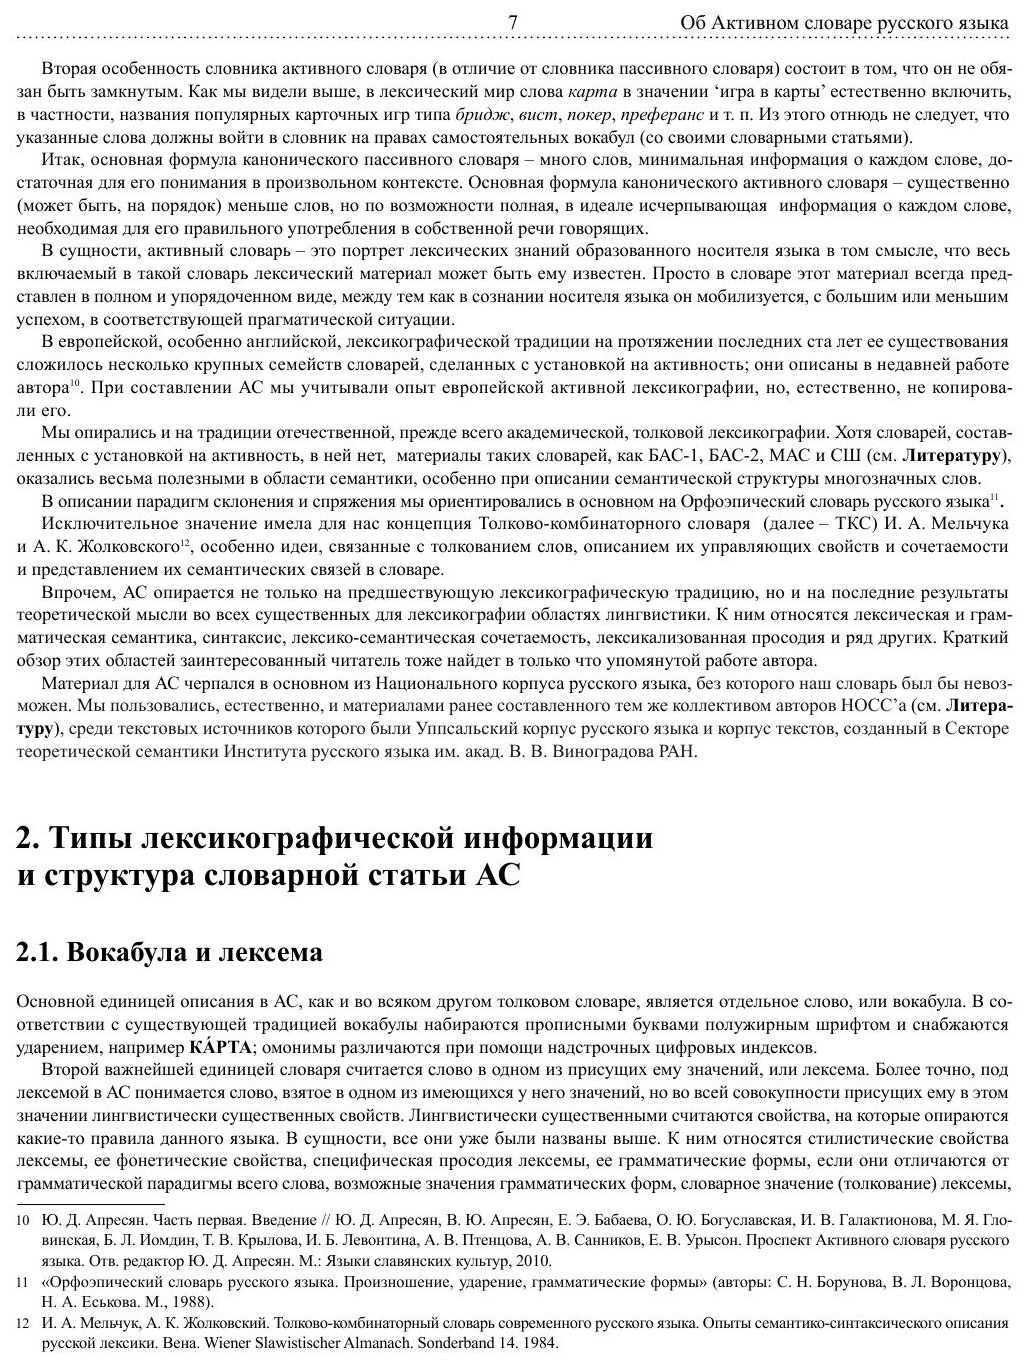 Активный словарь русского языка. Том 1. А-Б - фото №7